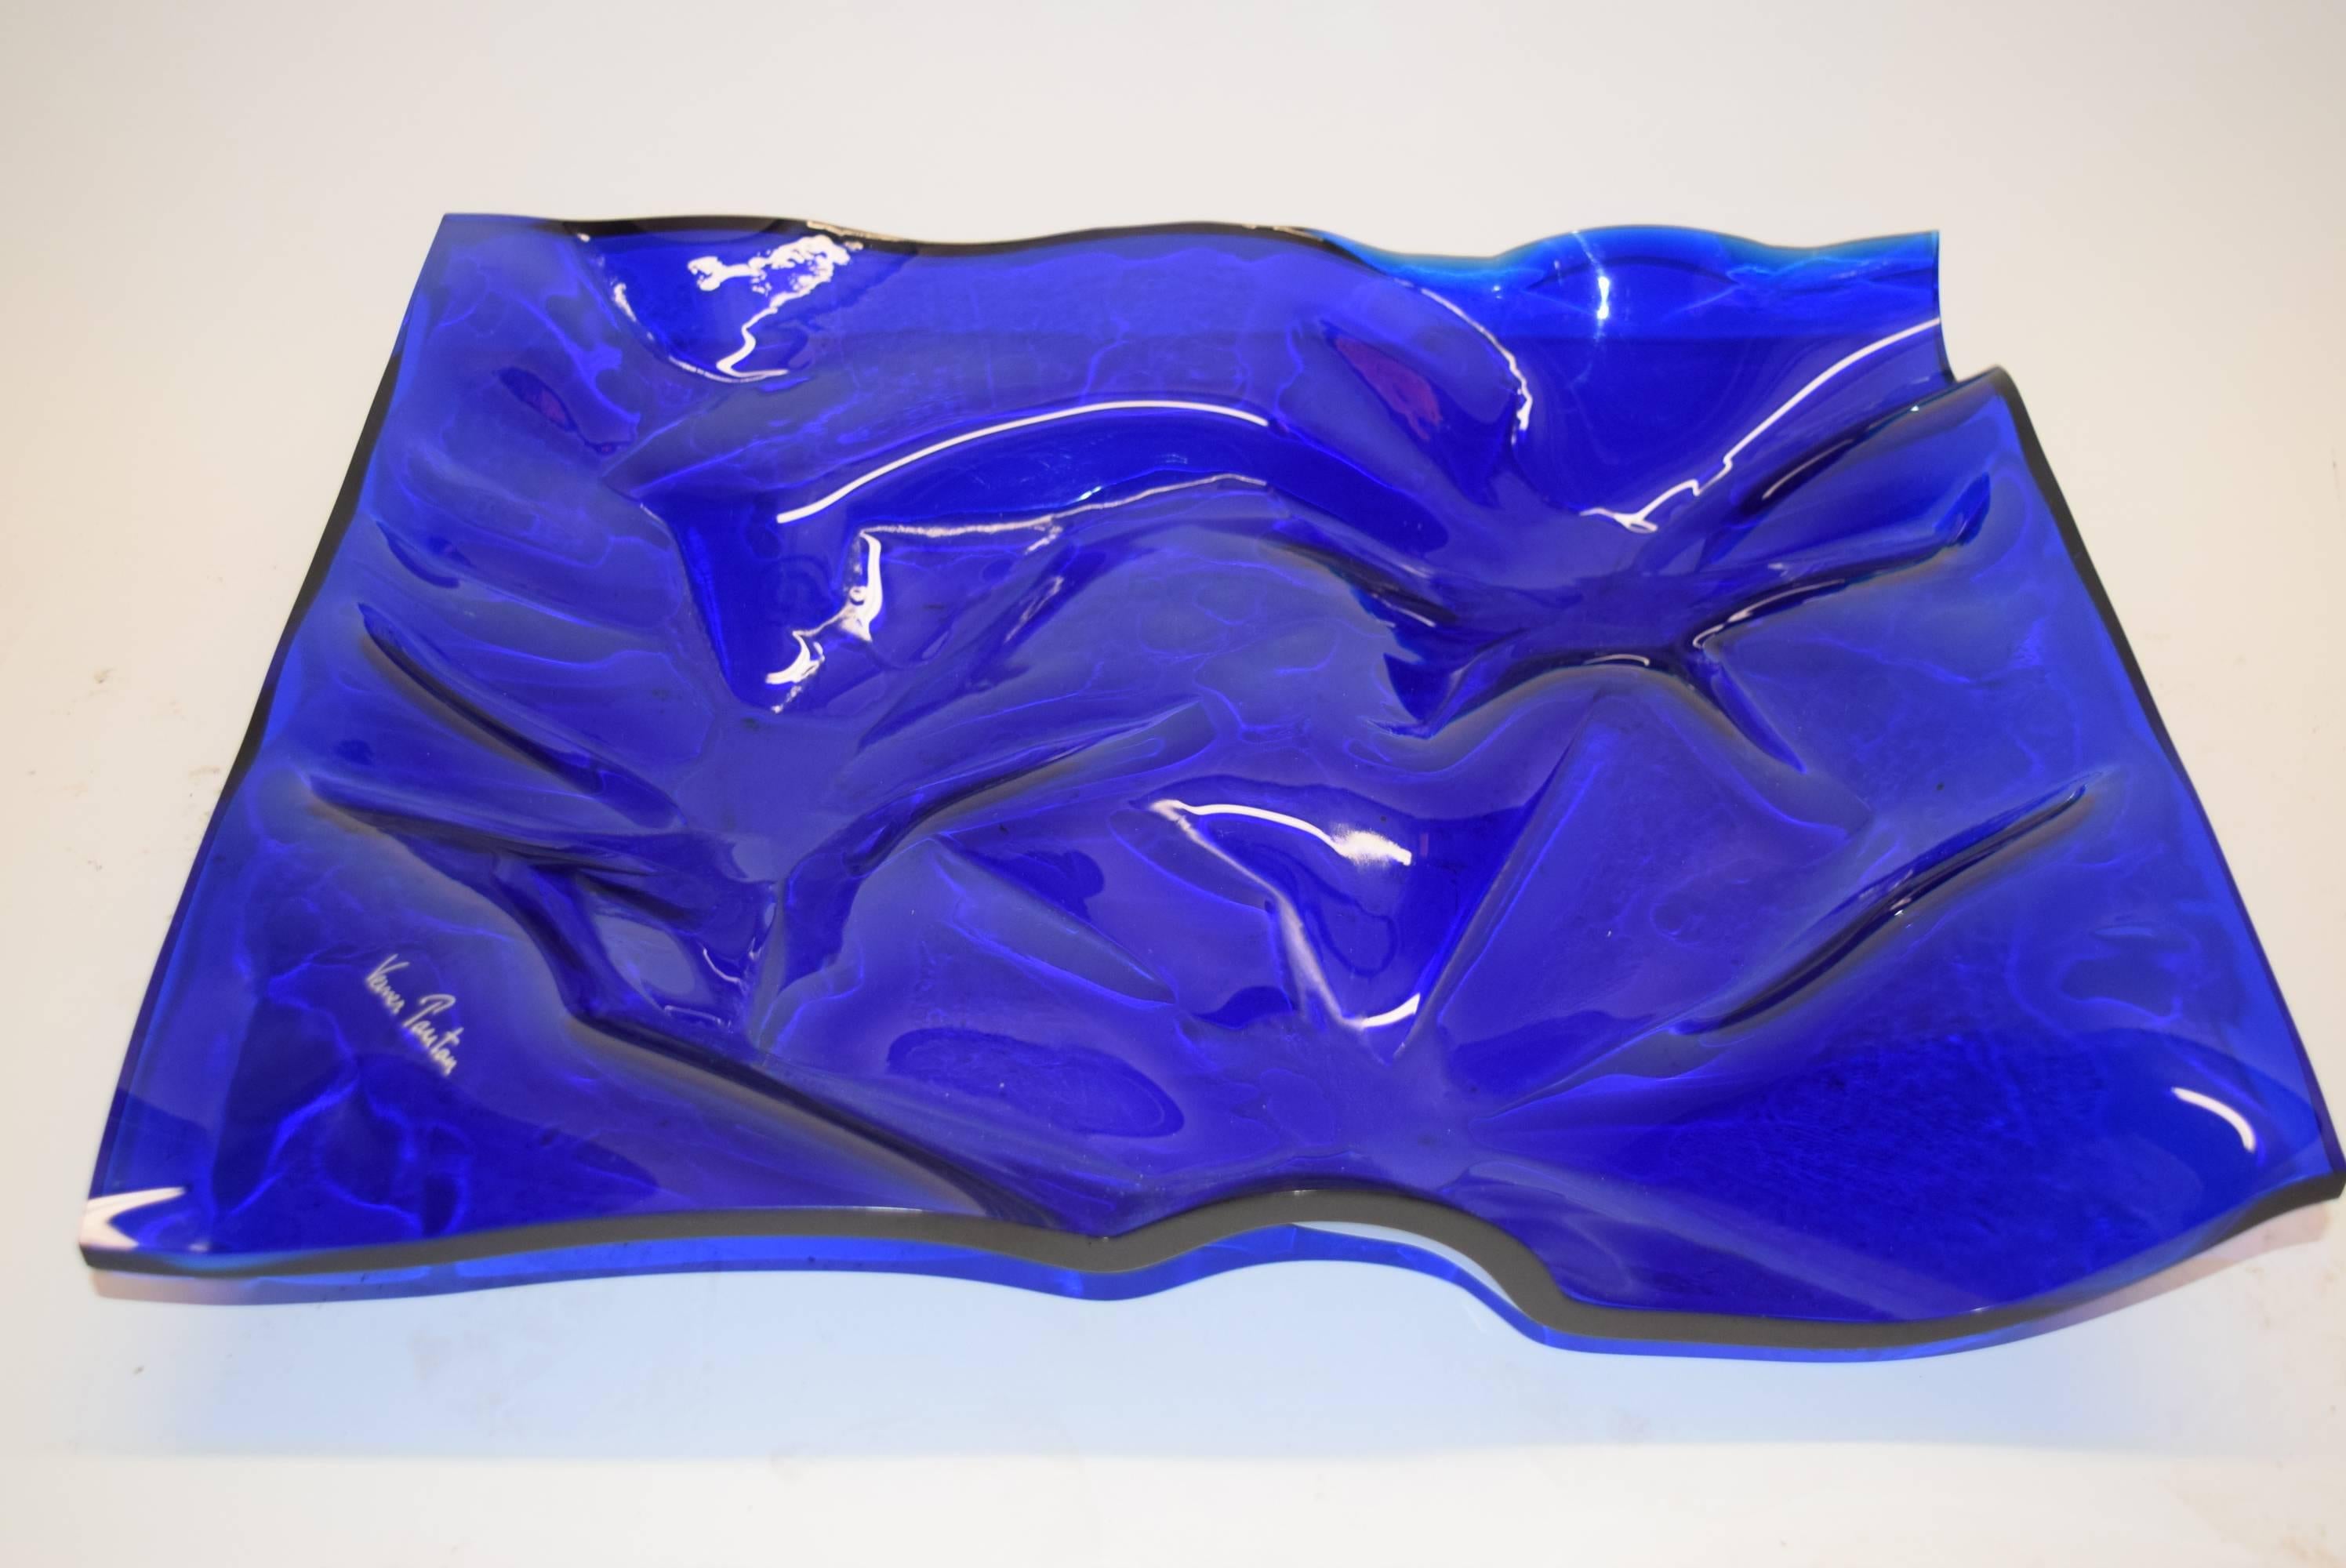 Mid-Century Modern Blue Acrylic Fruit Tray Designed by Verner Panton for Dansk in Denmark, 1988